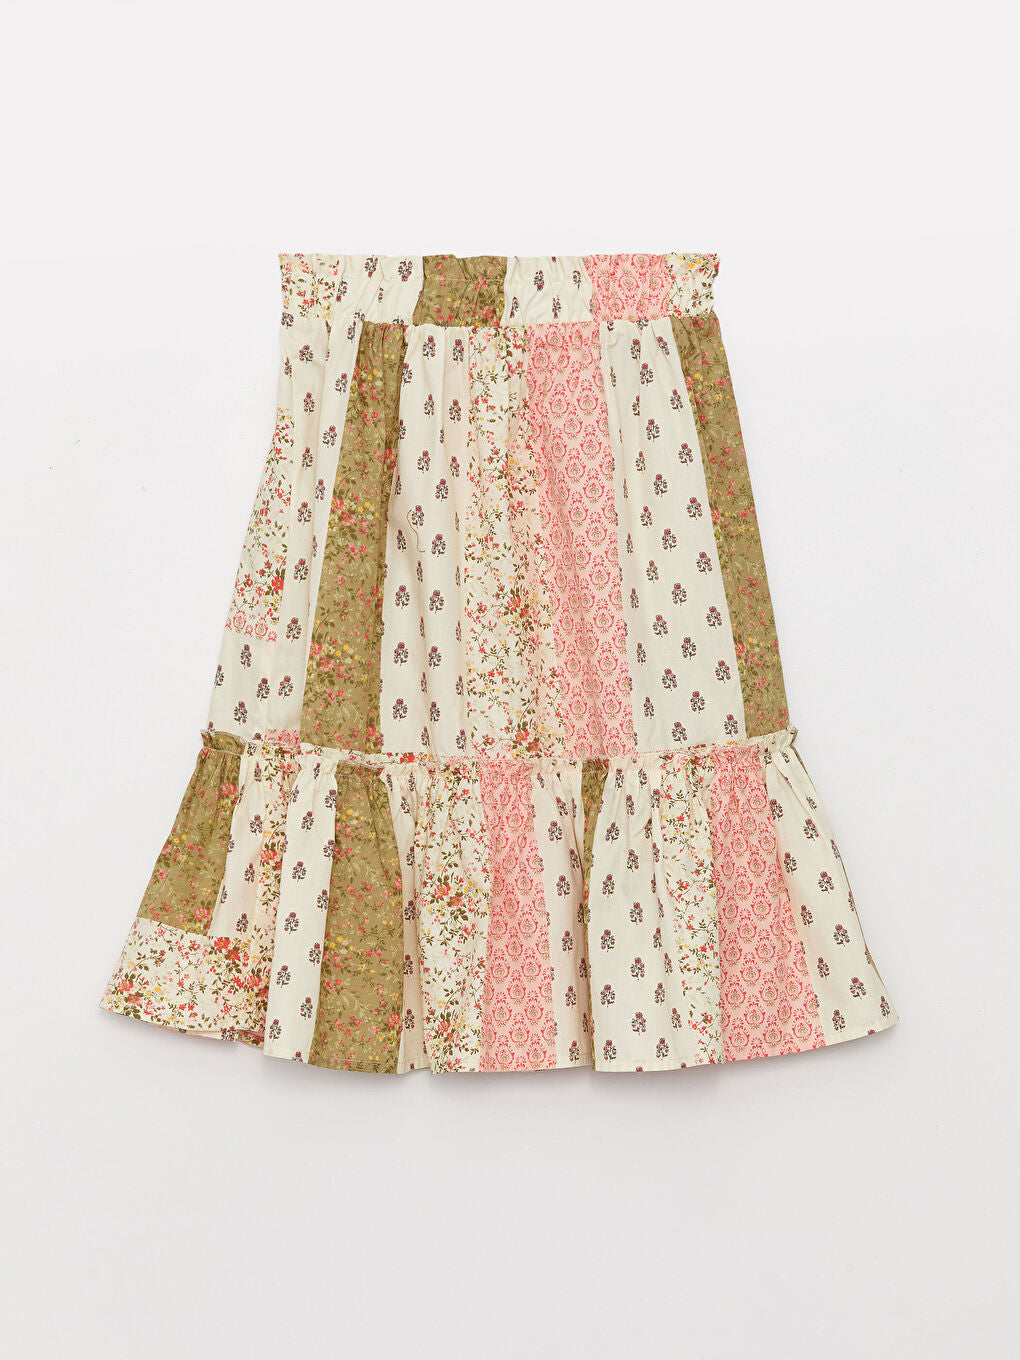 Elastic Waist Patterned Girl Skirt